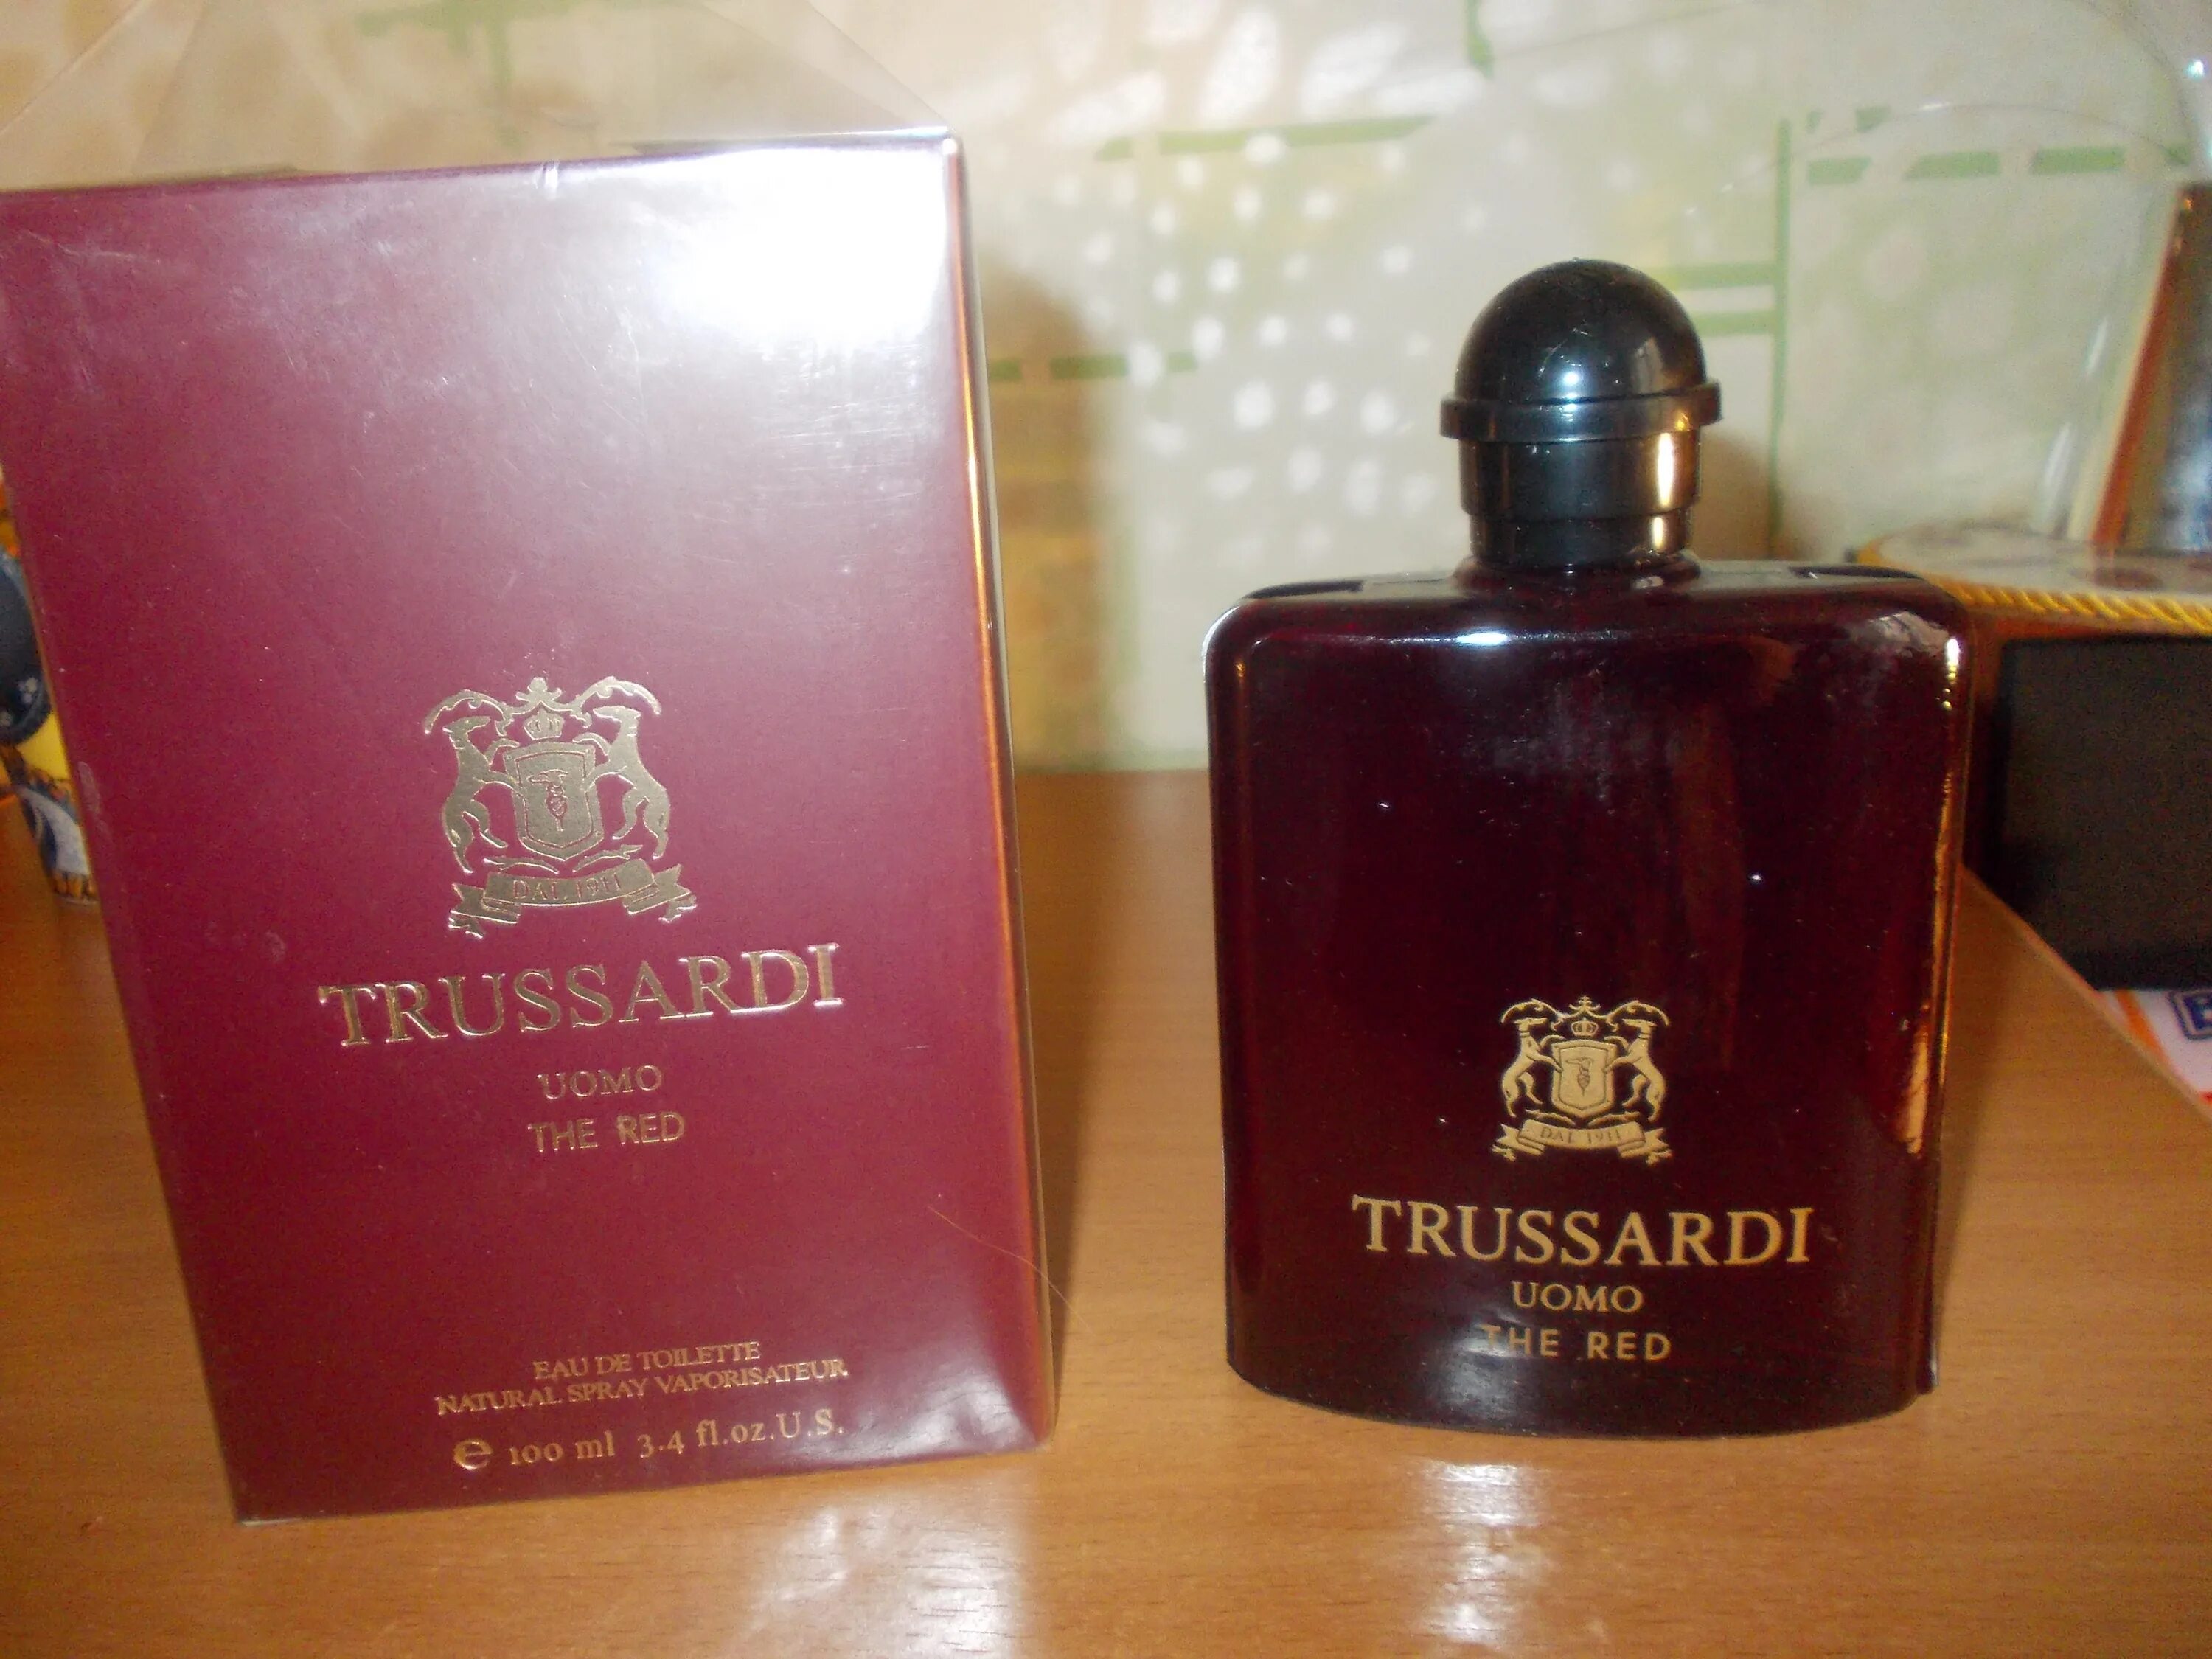 Trussardi uomo the Red 100 ml. Trussardi Parfums uomo Red. Труссарди духи красный флакон. Труссарди духи мужские красные. Труссарди руби ред